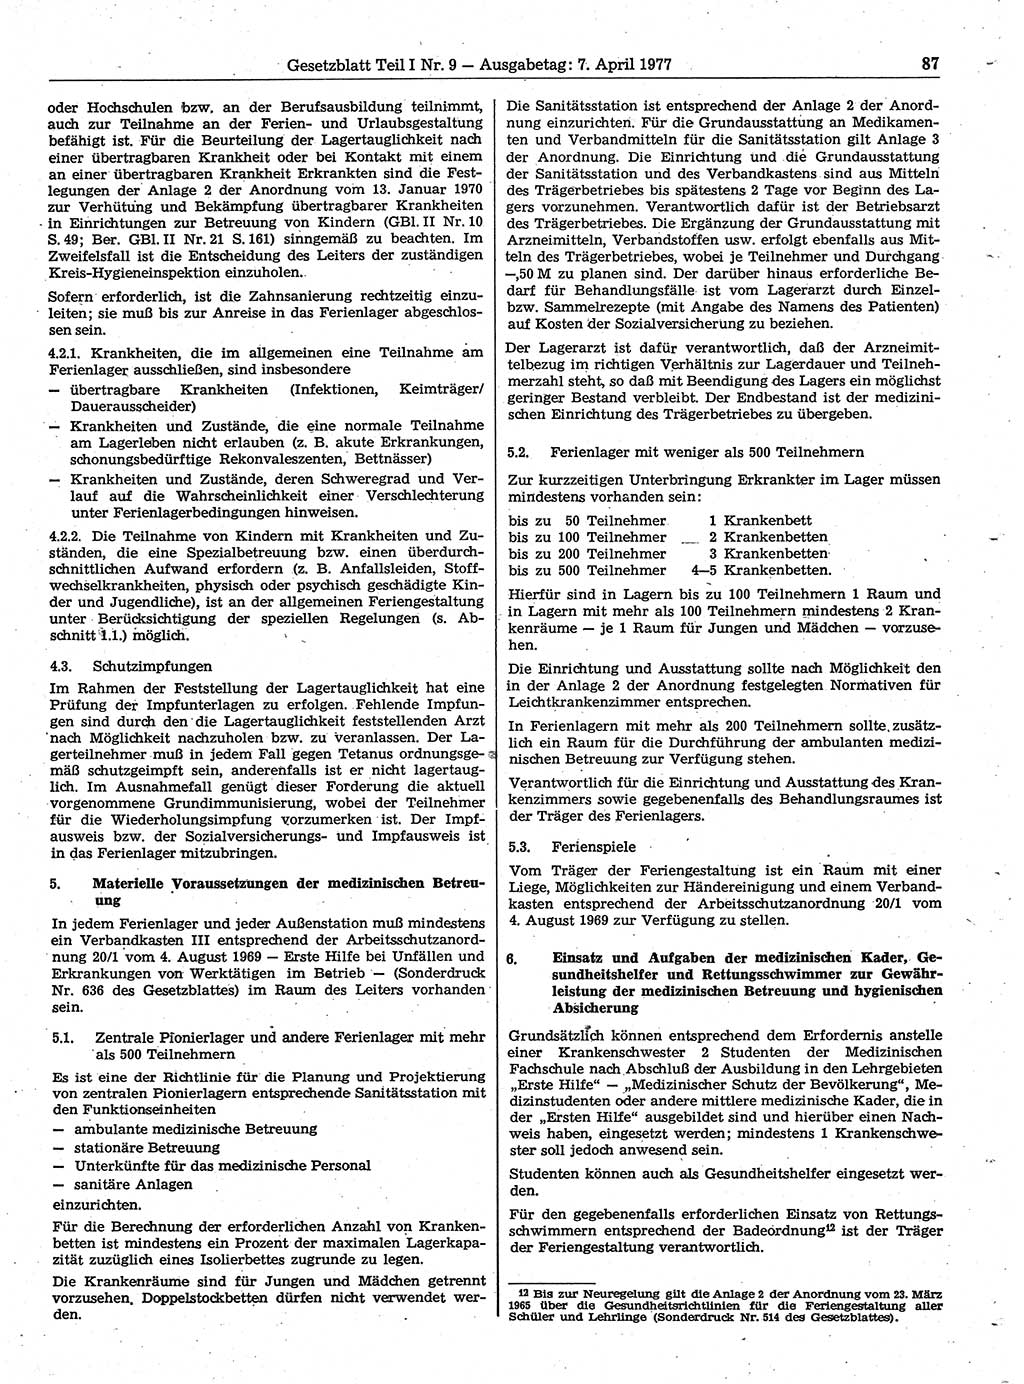 Gesetzblatt (GBl.) der Deutschen Demokratischen Republik (DDR) Teil Ⅰ 1977, Seite 87 (GBl. DDR Ⅰ 1977, S. 87)